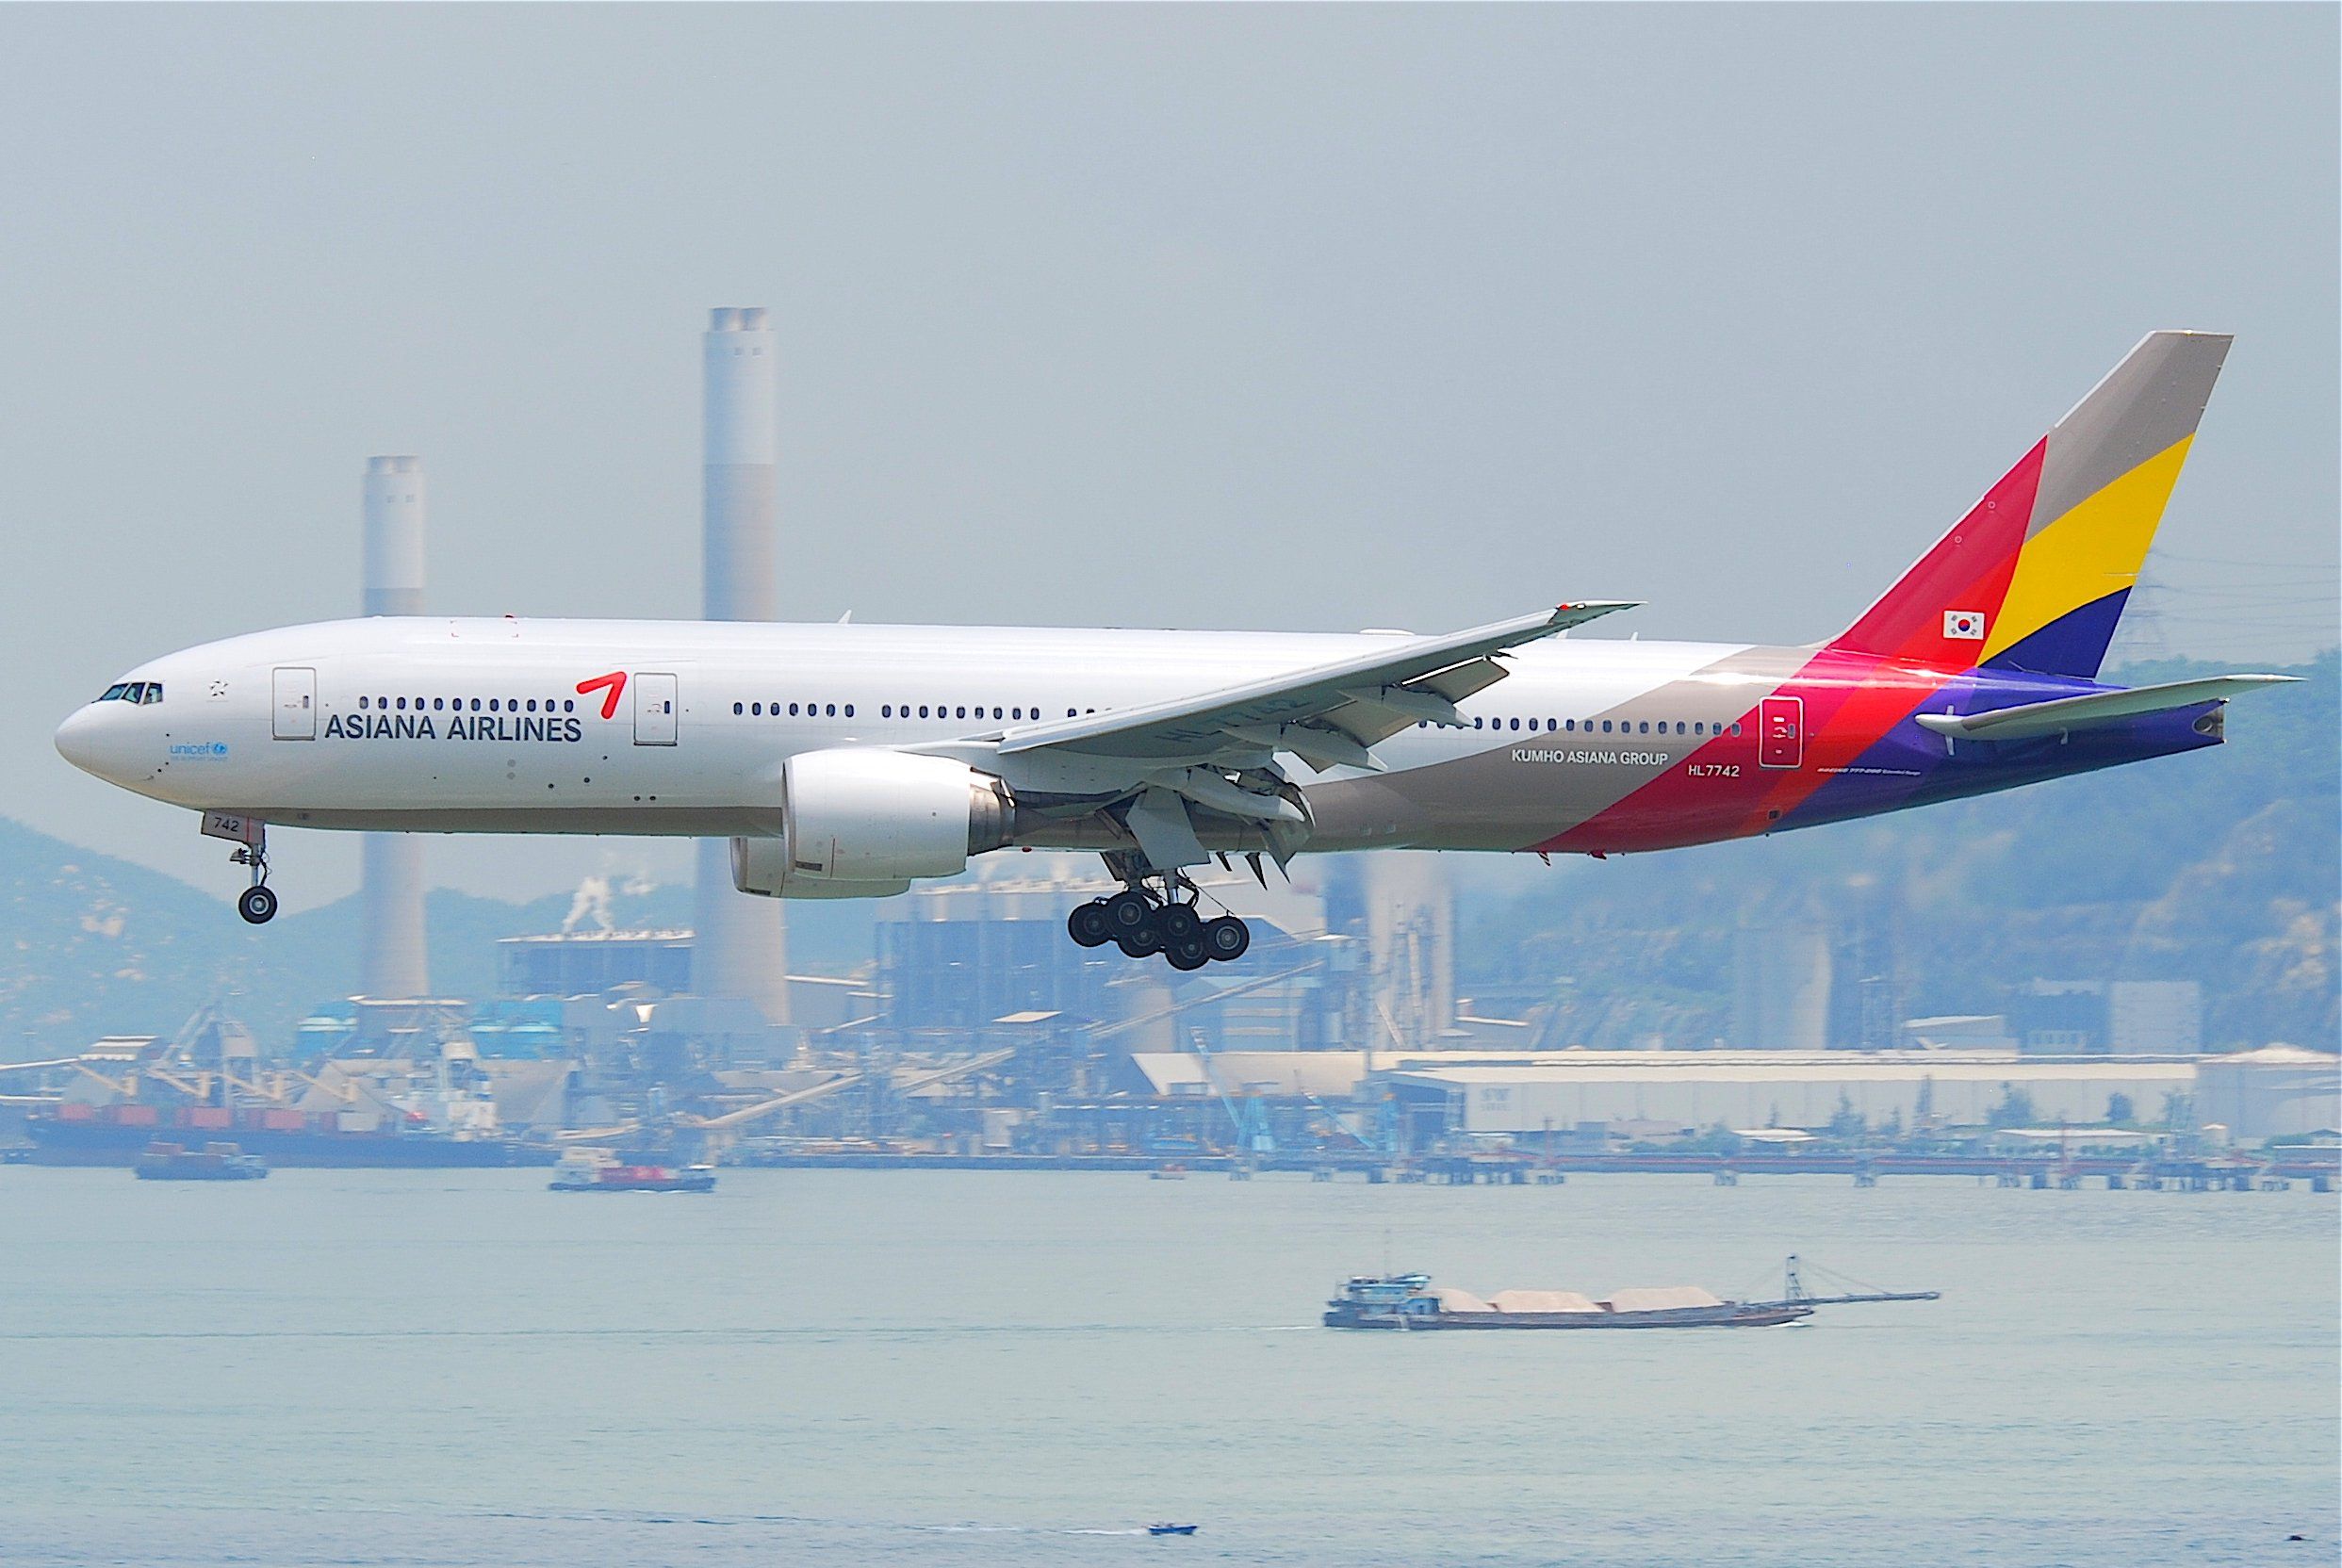 Asiana_Airlines_Boeing_777-200ER;_HL7742@HKG;31.07.2011_614fy_(6053139064)